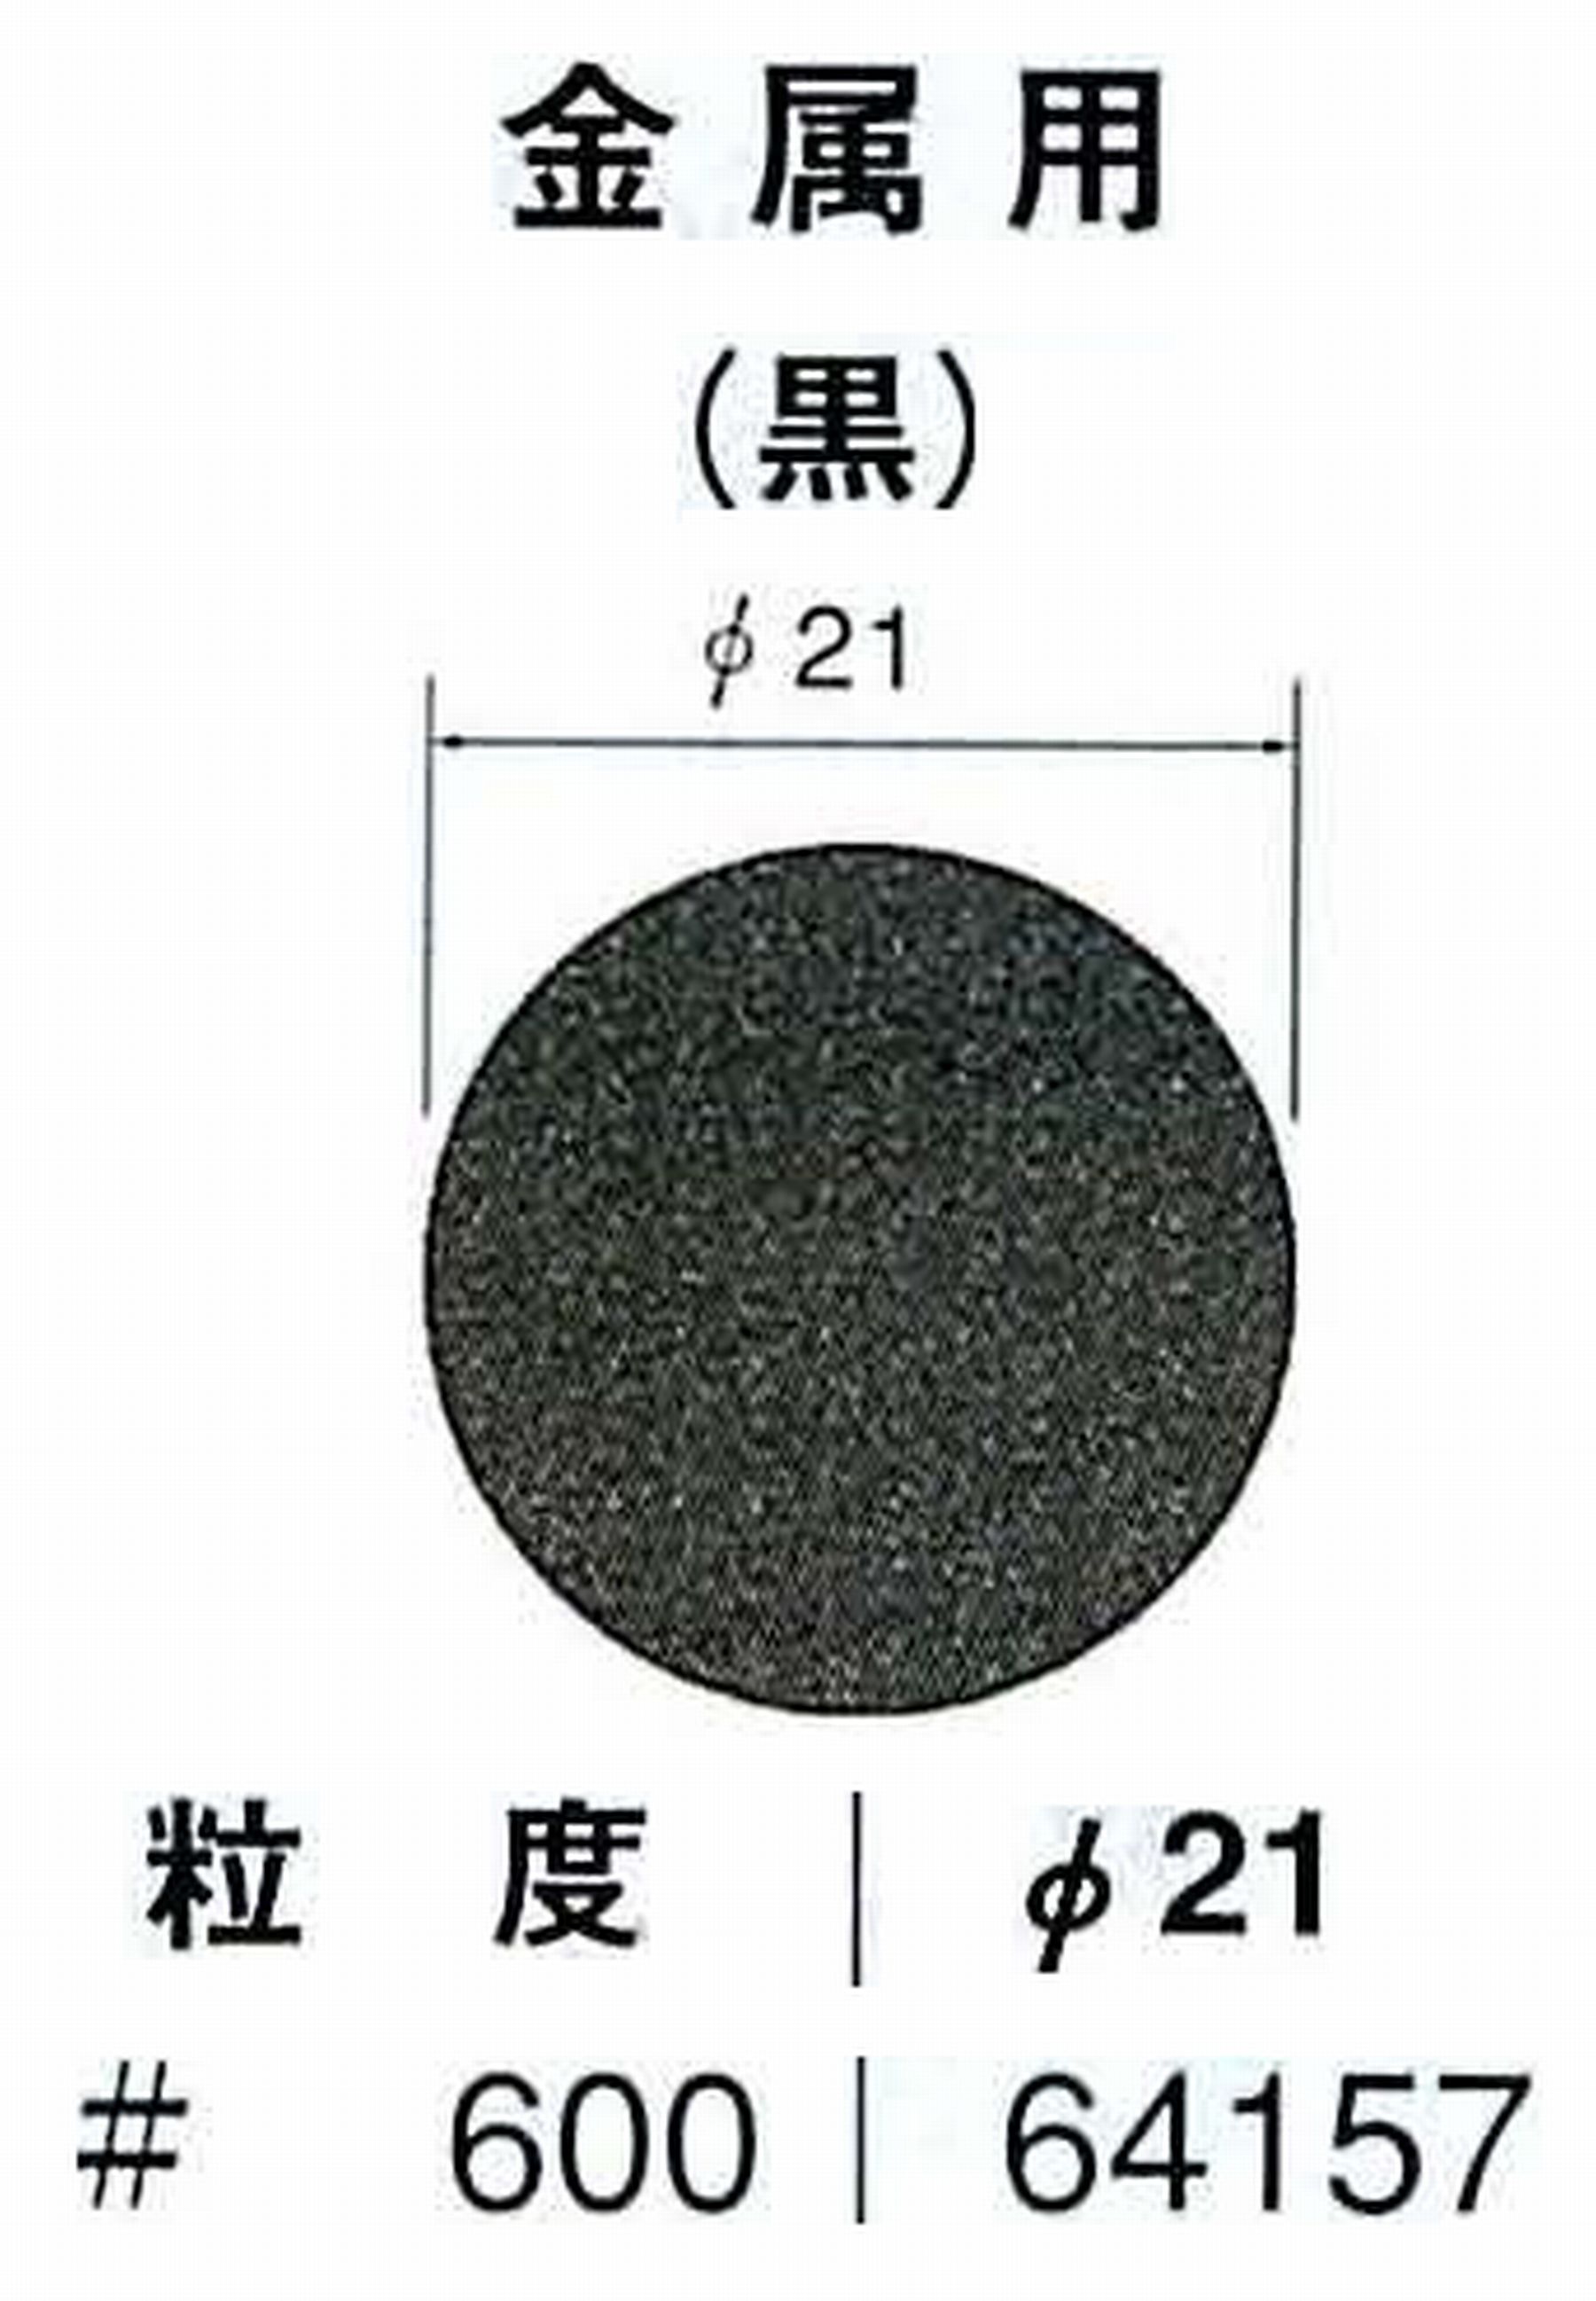 ナカニシ/NAKANISHI アングルグラインダ(電動・エアー) アングルアタッチメント専用工具 サンドペーパーディスク(紙基材タイプ)裏面のり処理 64157